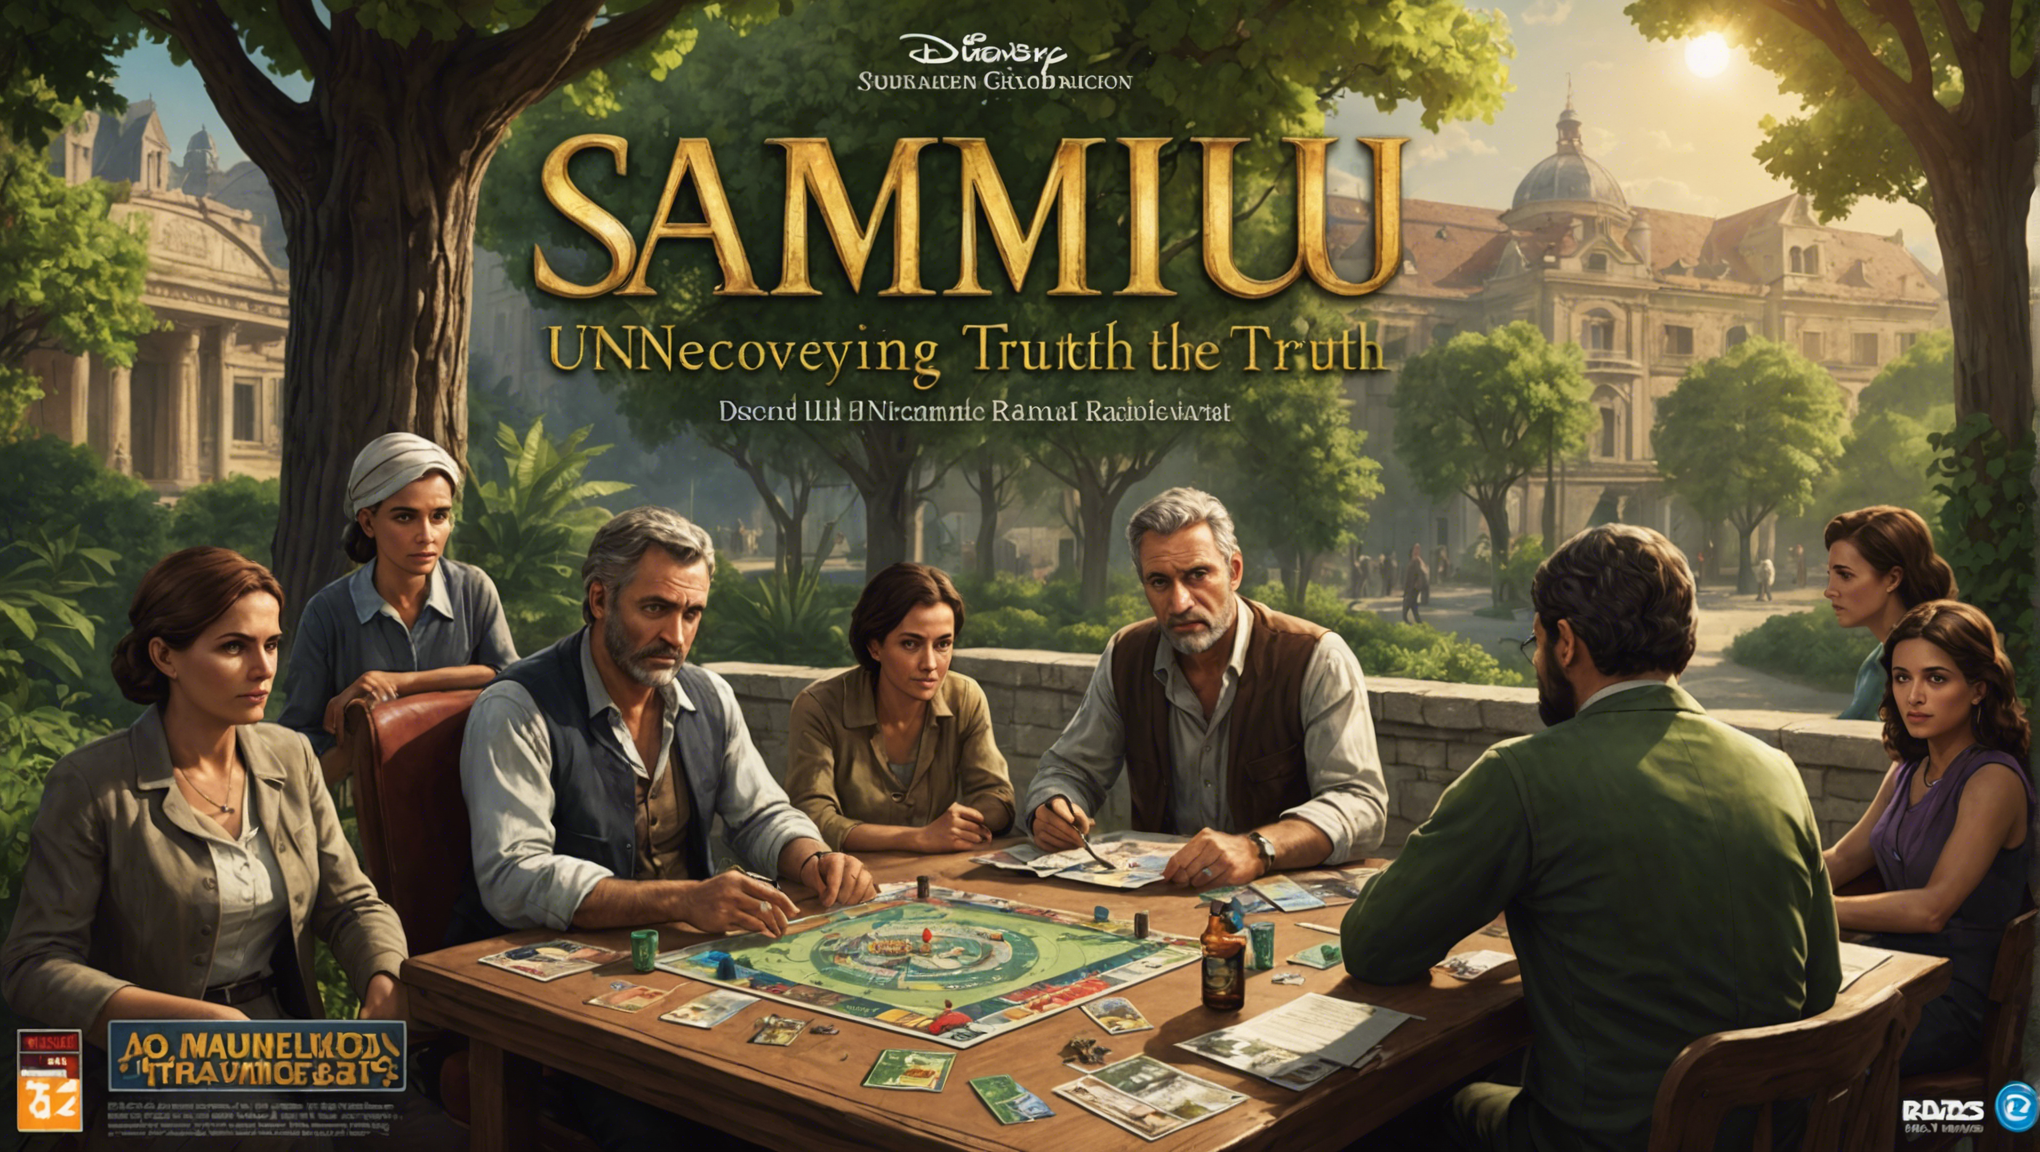 découvrez les mystères et les secrets cachés derrière les jeux de société sammu-ramat, un phénomène ludique captivant. plongez dans l'univers de ces jeux intrigants et révélez la vérité!